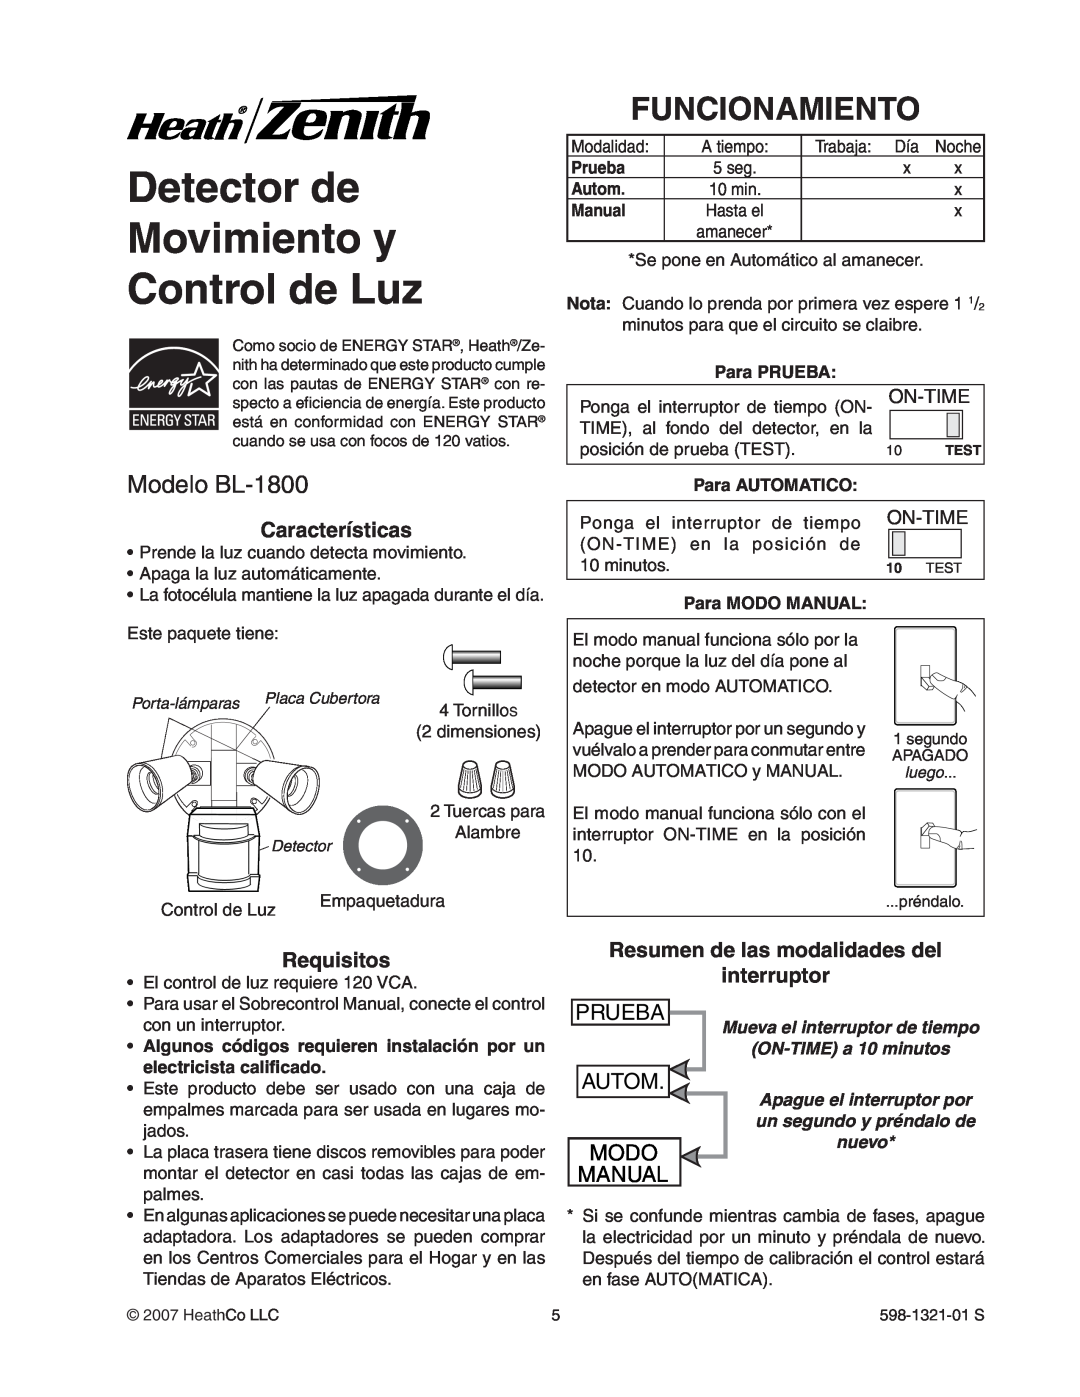 Heath Zenith manual Detector de Movimiento y Control de Luz, Funcionamiento, Modelo BL-1800, Prueba, Autom, Modo, Manual 